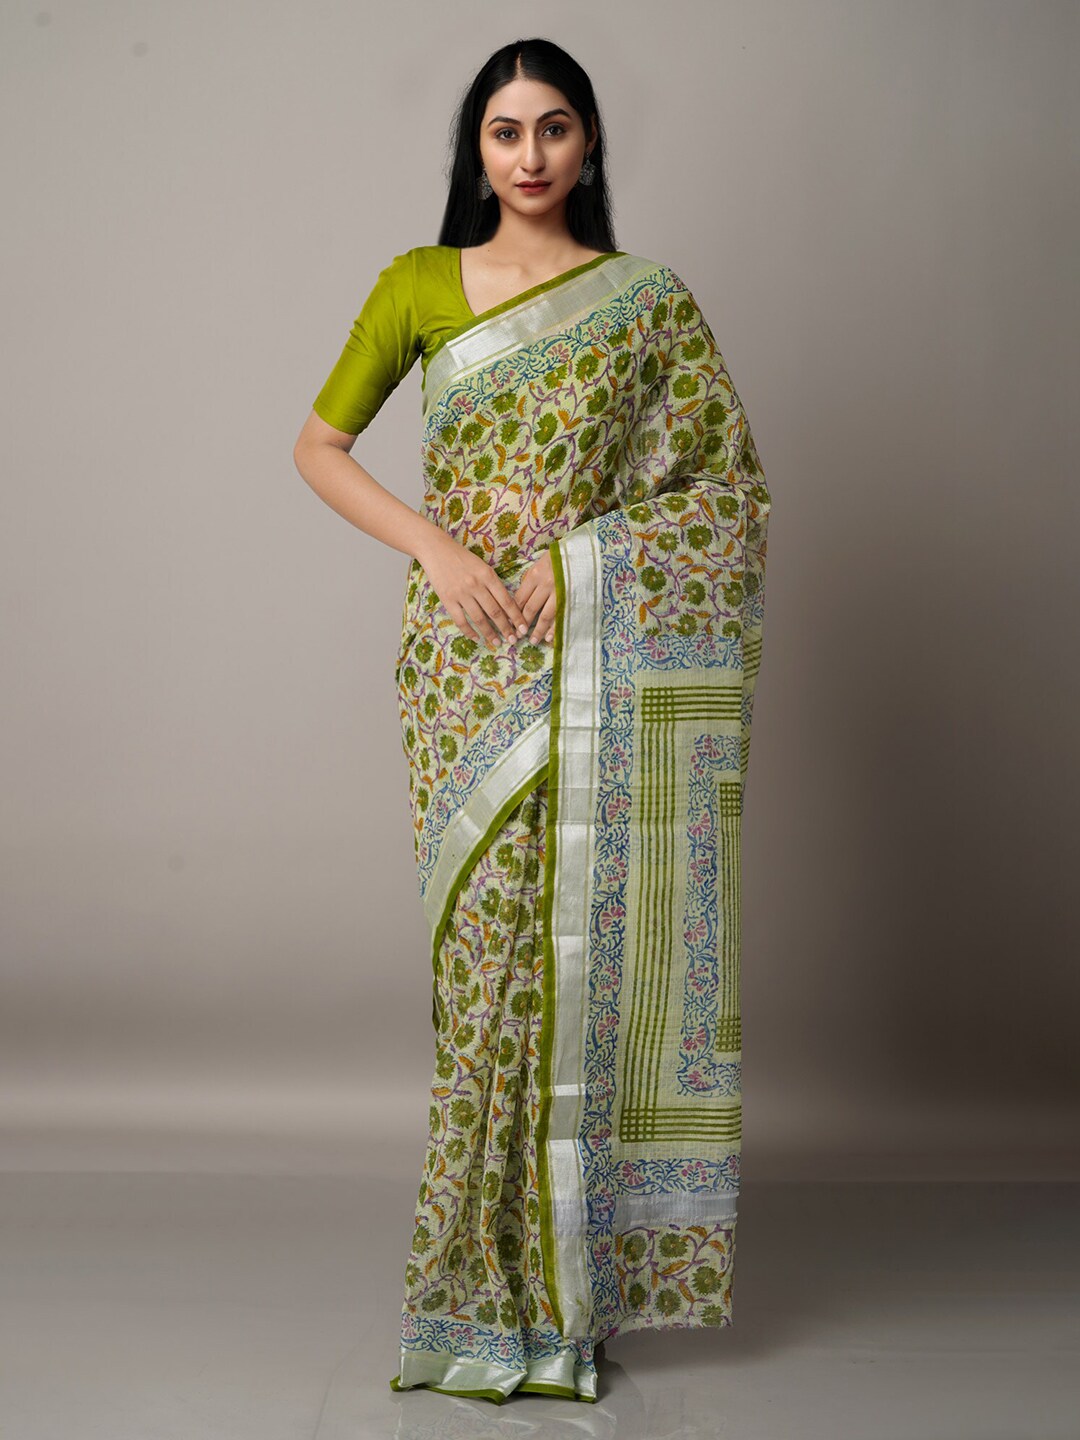 Unnati Silks Green & Silver-Toned Ethnic Motifs Pure Cotton Kota Saree Price in India